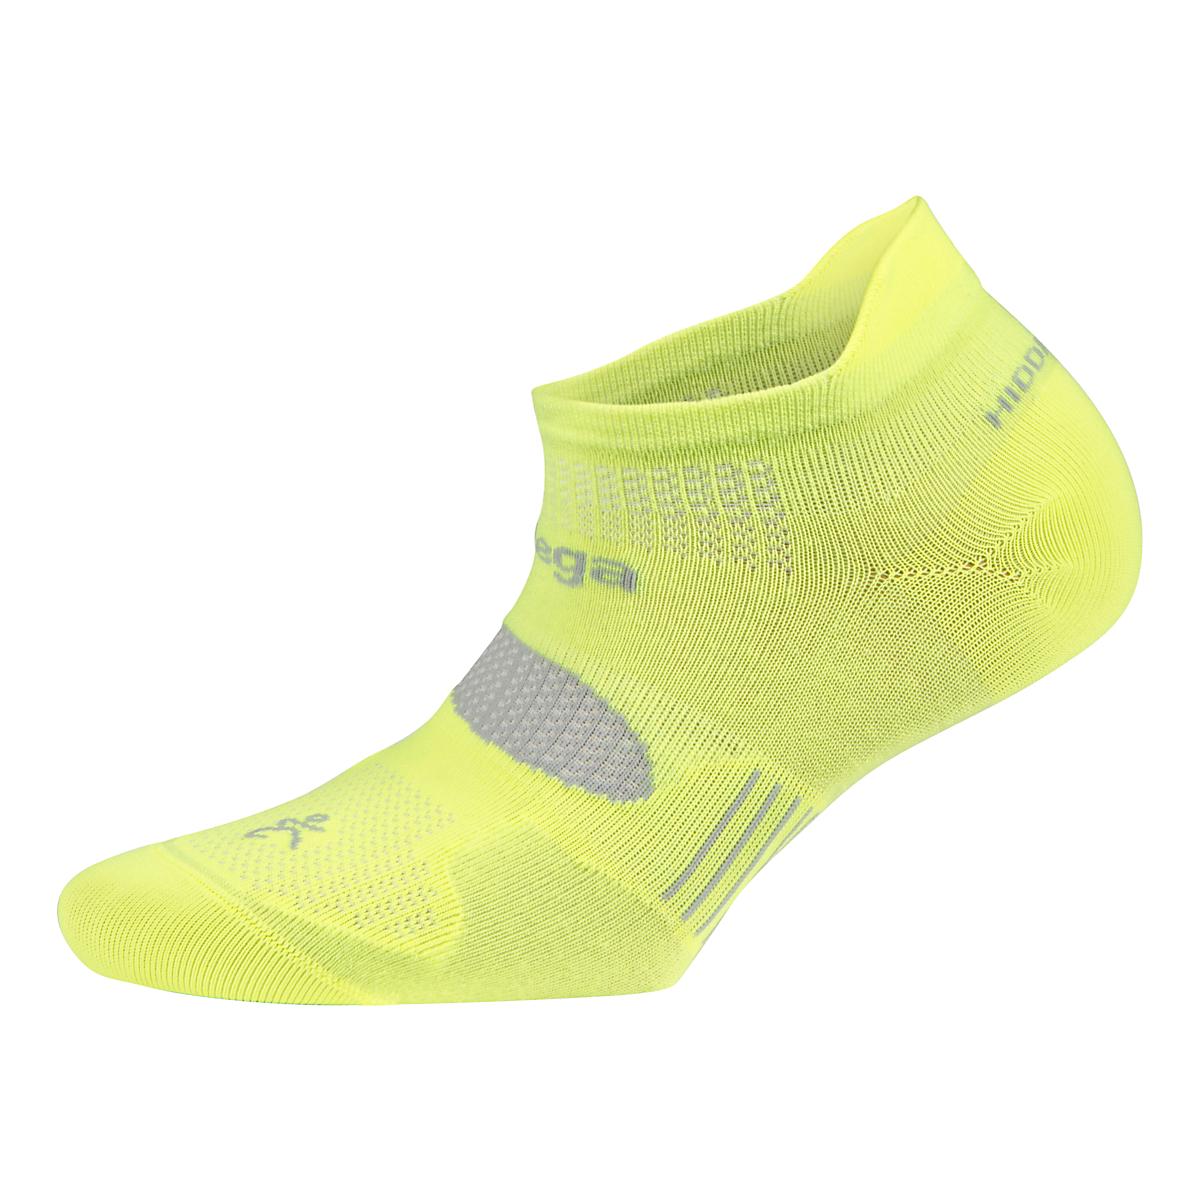 Balega Hidden Comfort Single Socks at Road Runner Sports